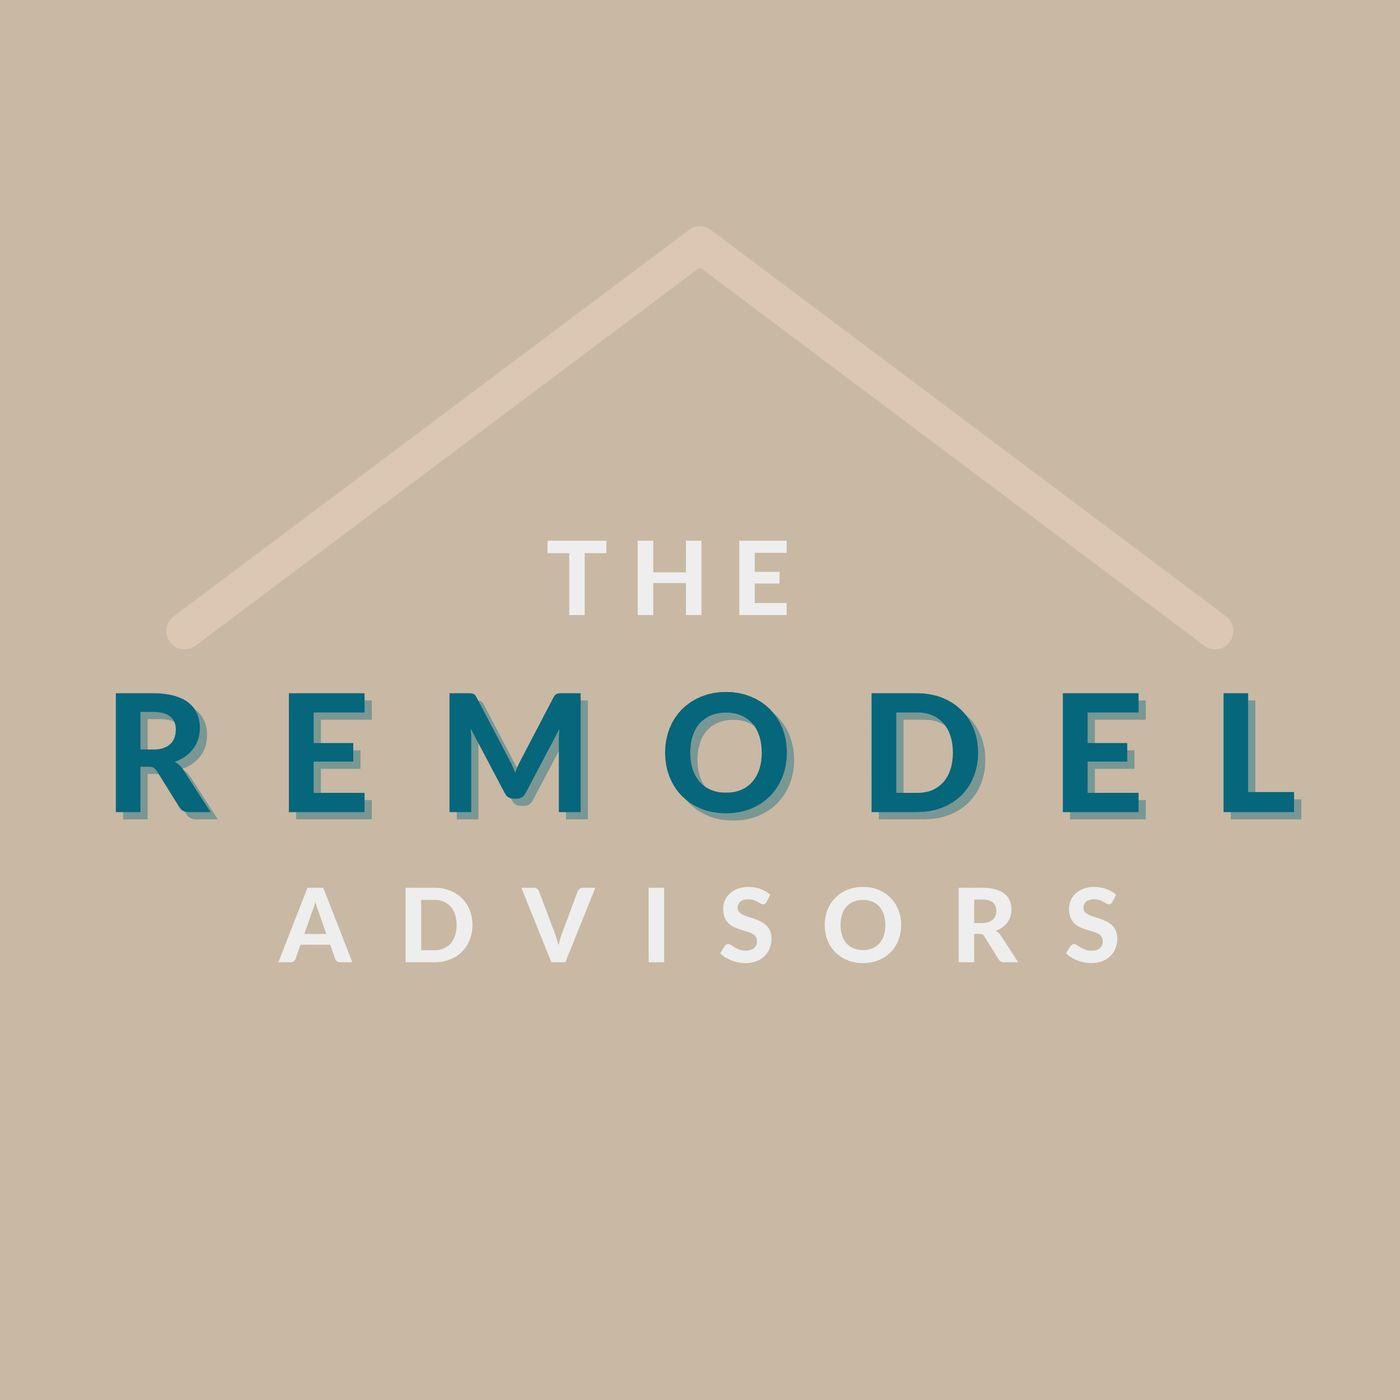 The Remodel Advisors